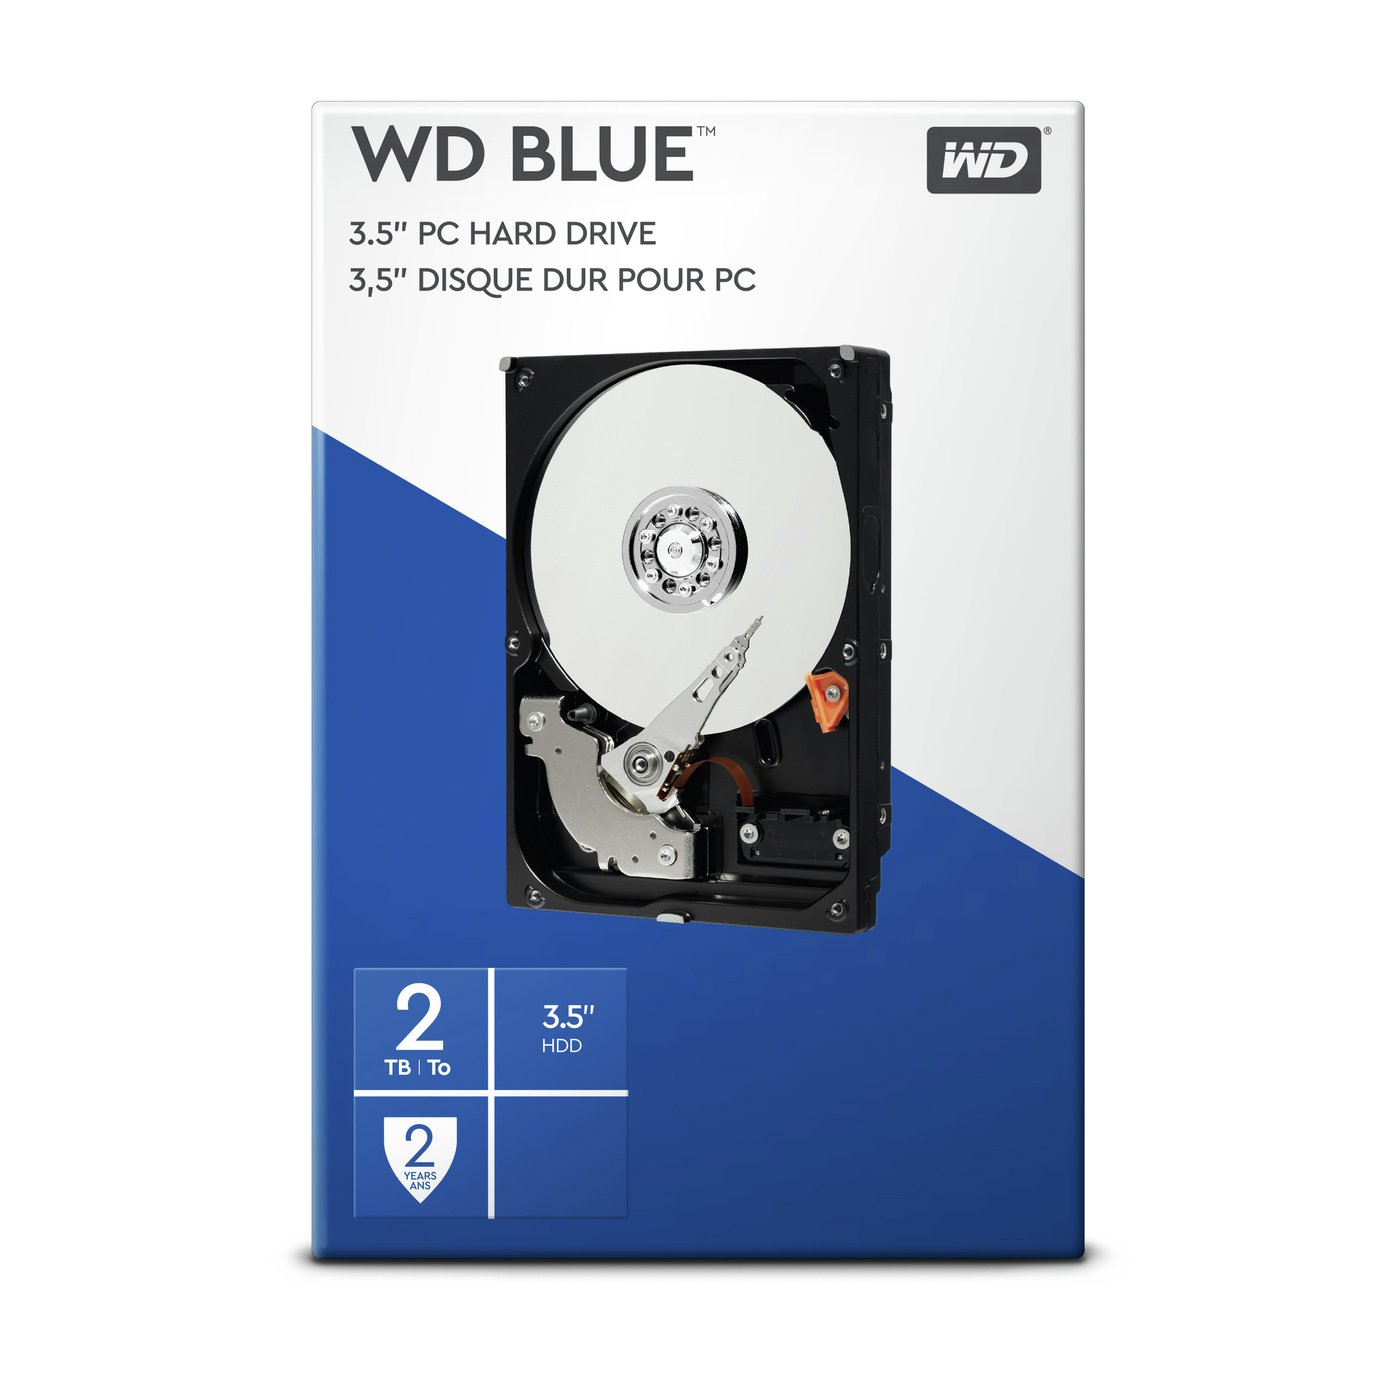 WD Blue 2TB PC Hard Drive